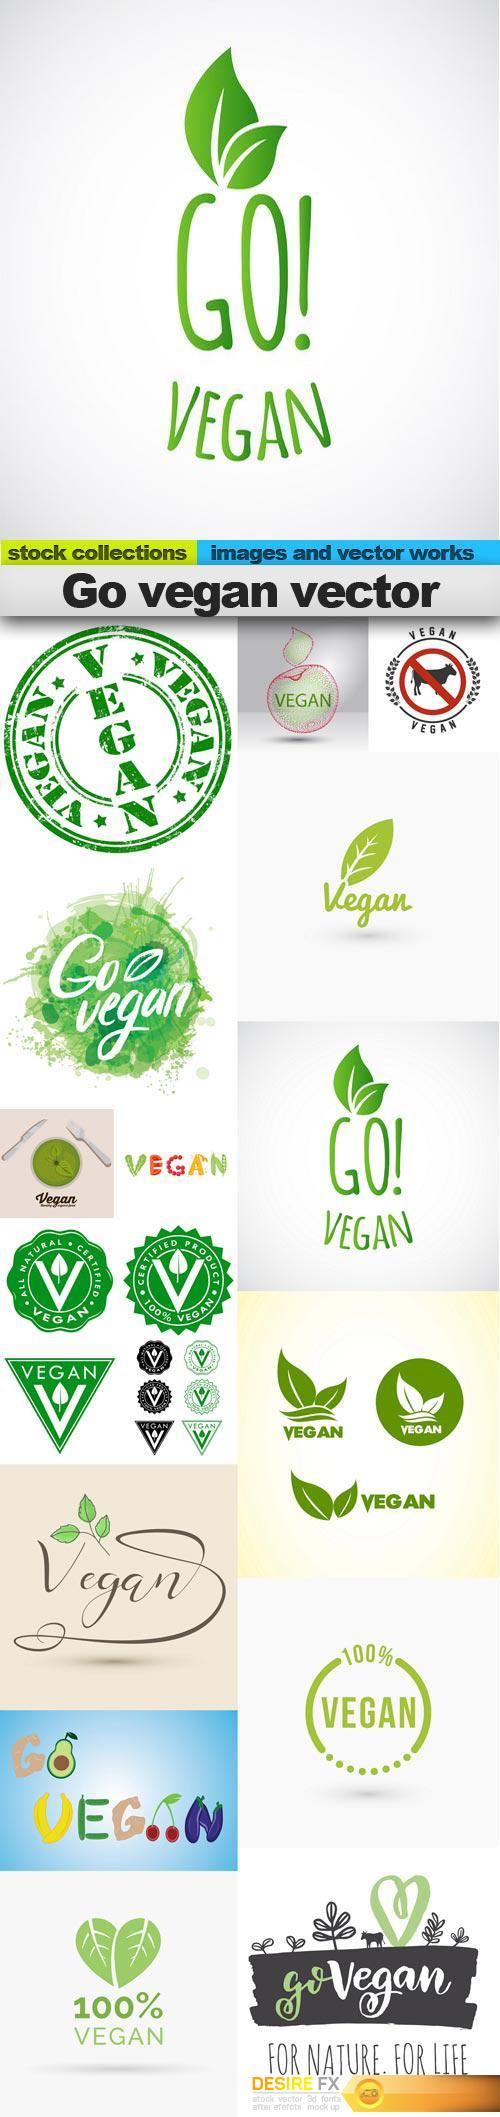 Go vegan vector, 15 x EPS